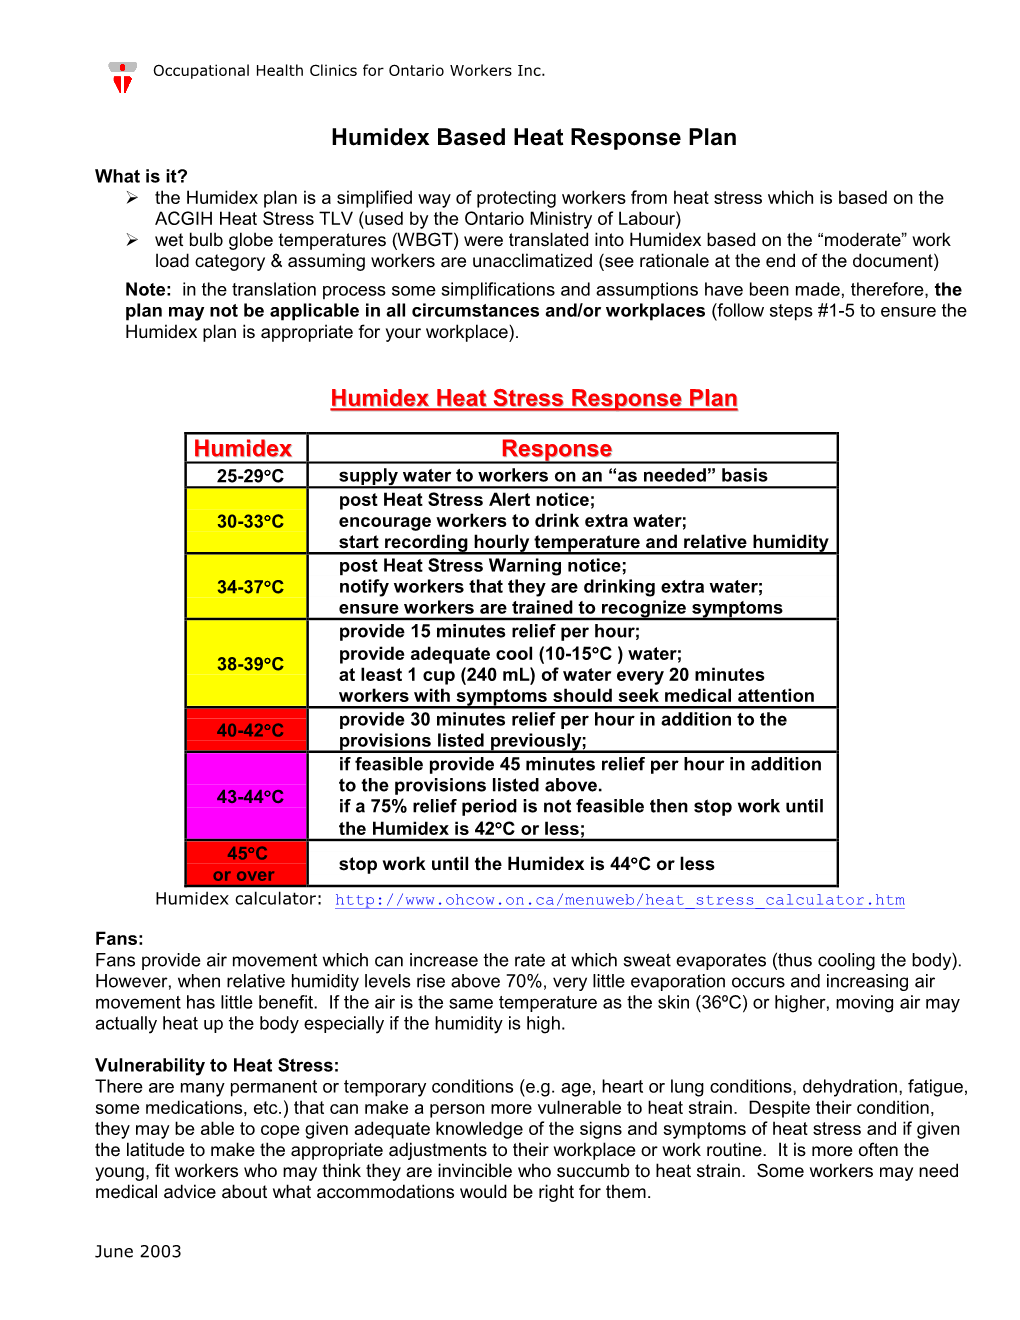 Humidex Based Heat Response Plan